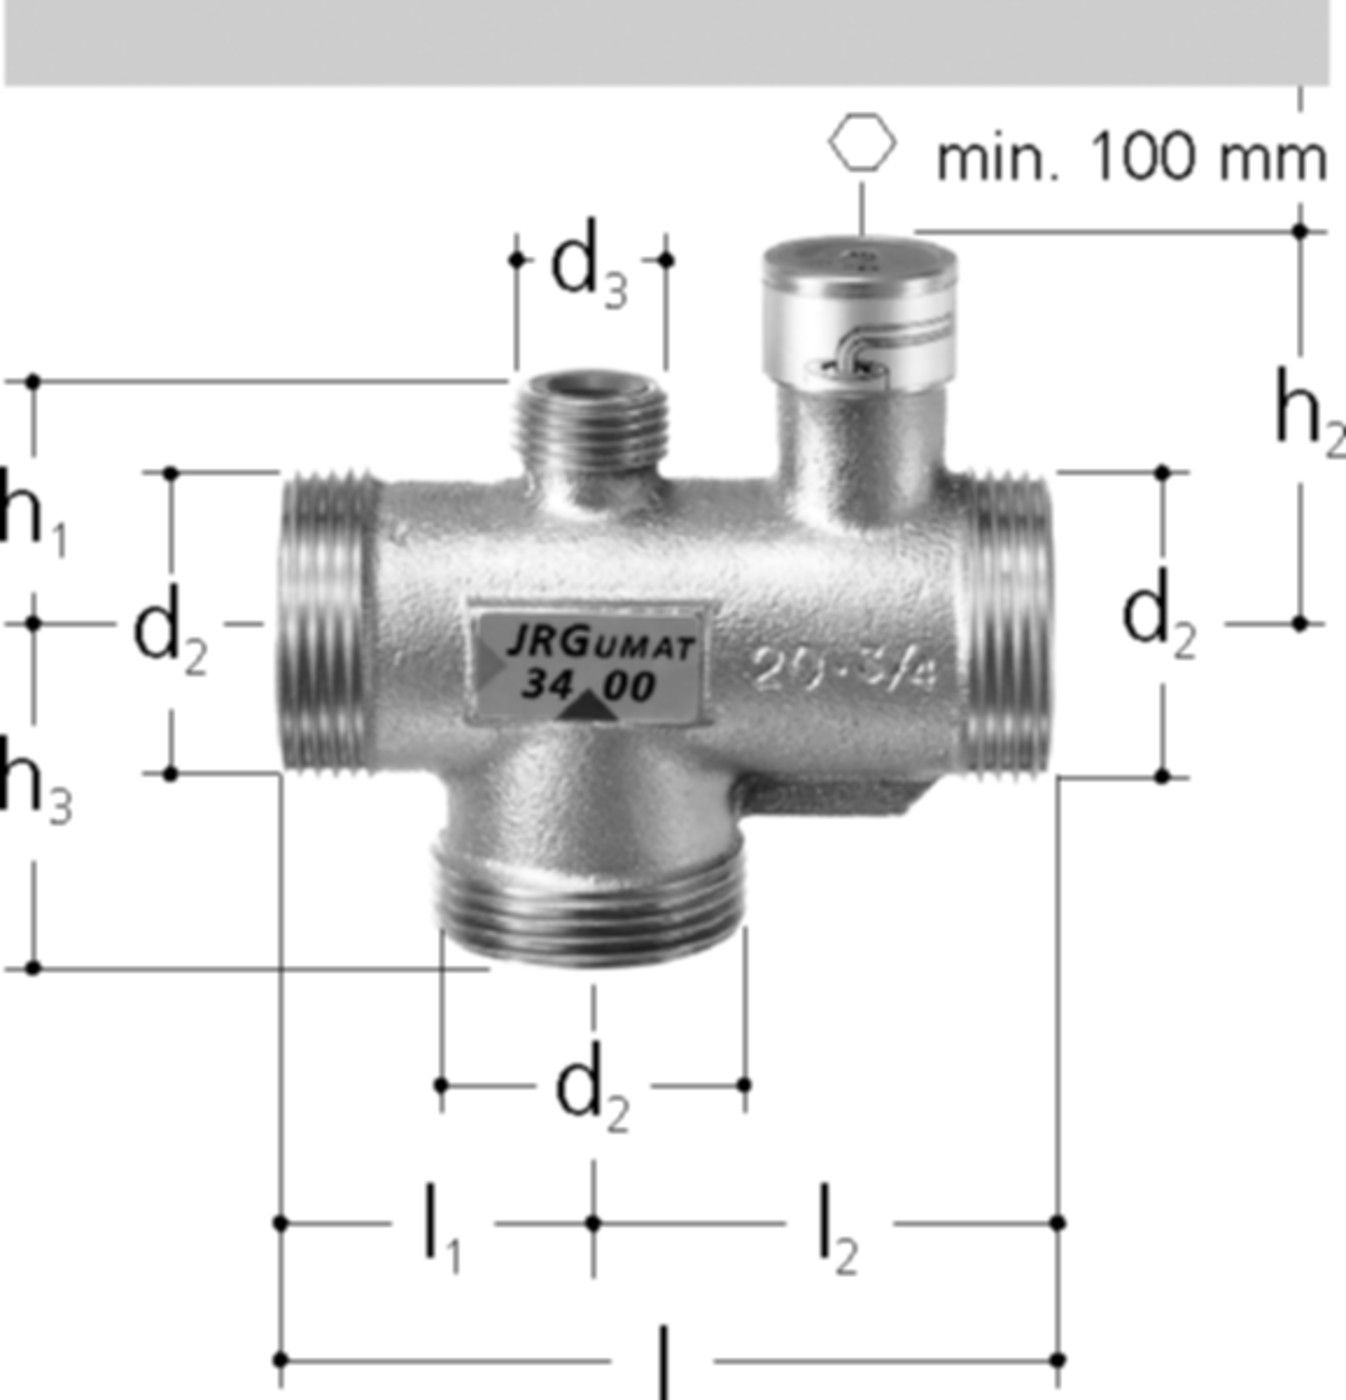 JRGUMAT Thermomischer PN 10 3/4" DN 20 55°C 3400.926 - JRG Armaturen